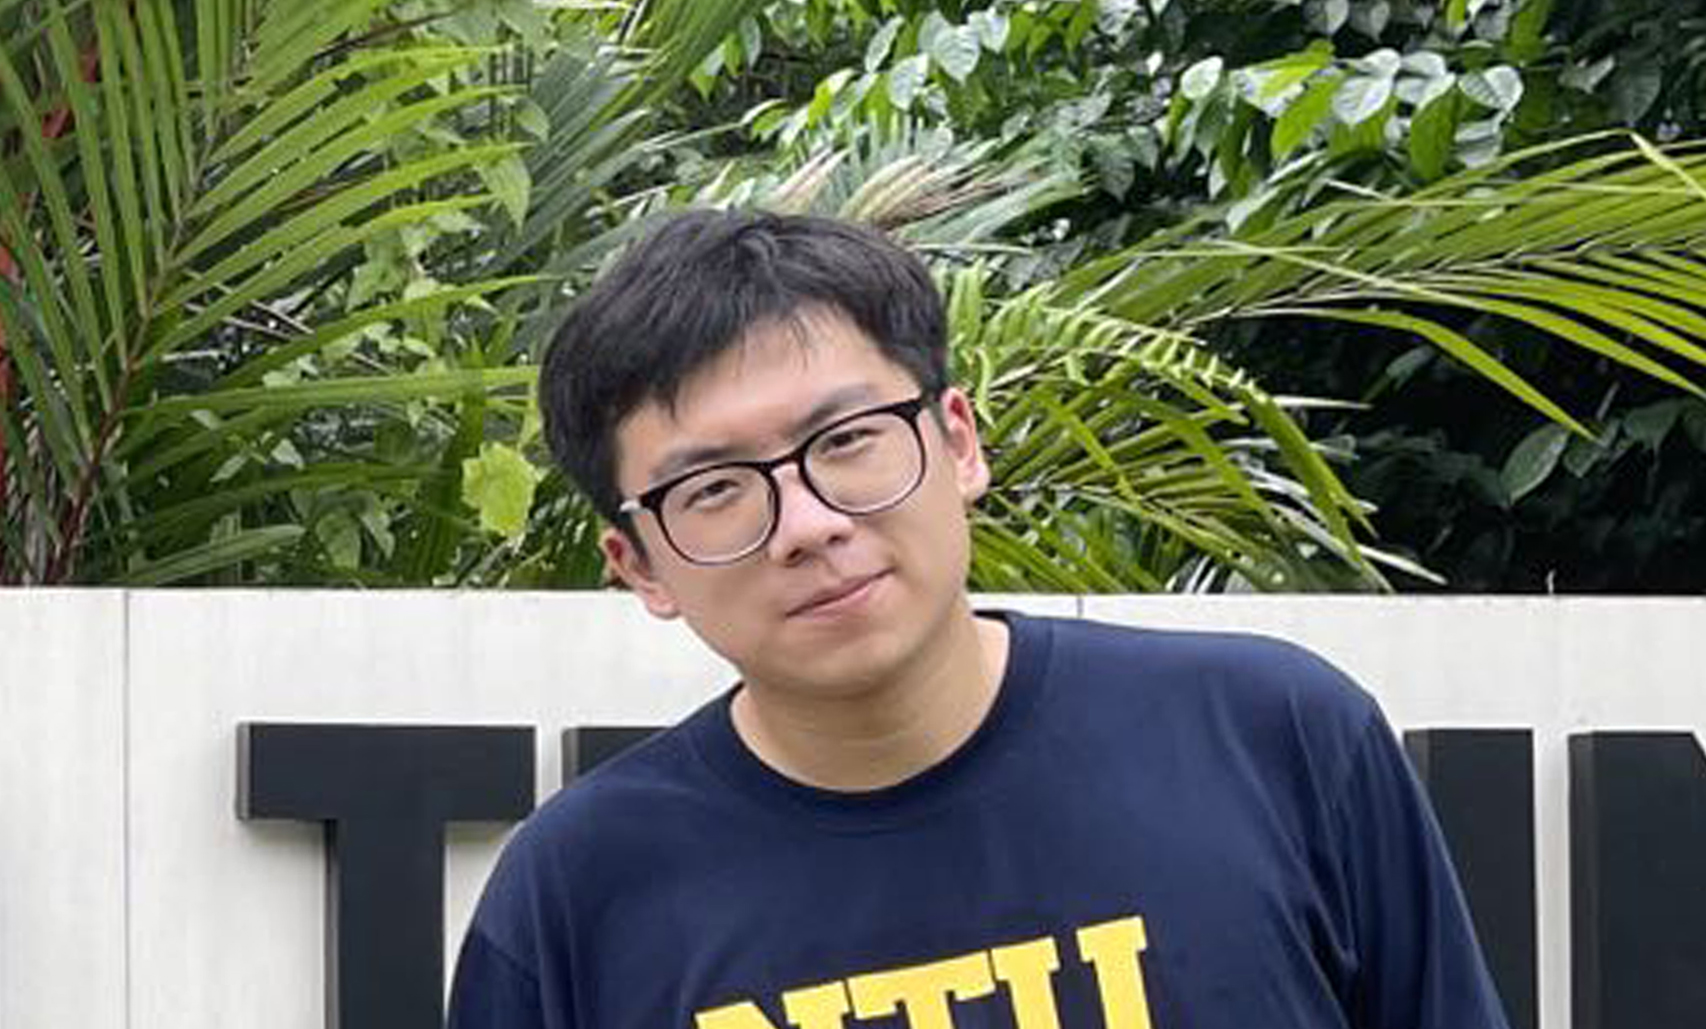 NTUpreneur Li Xue Liang